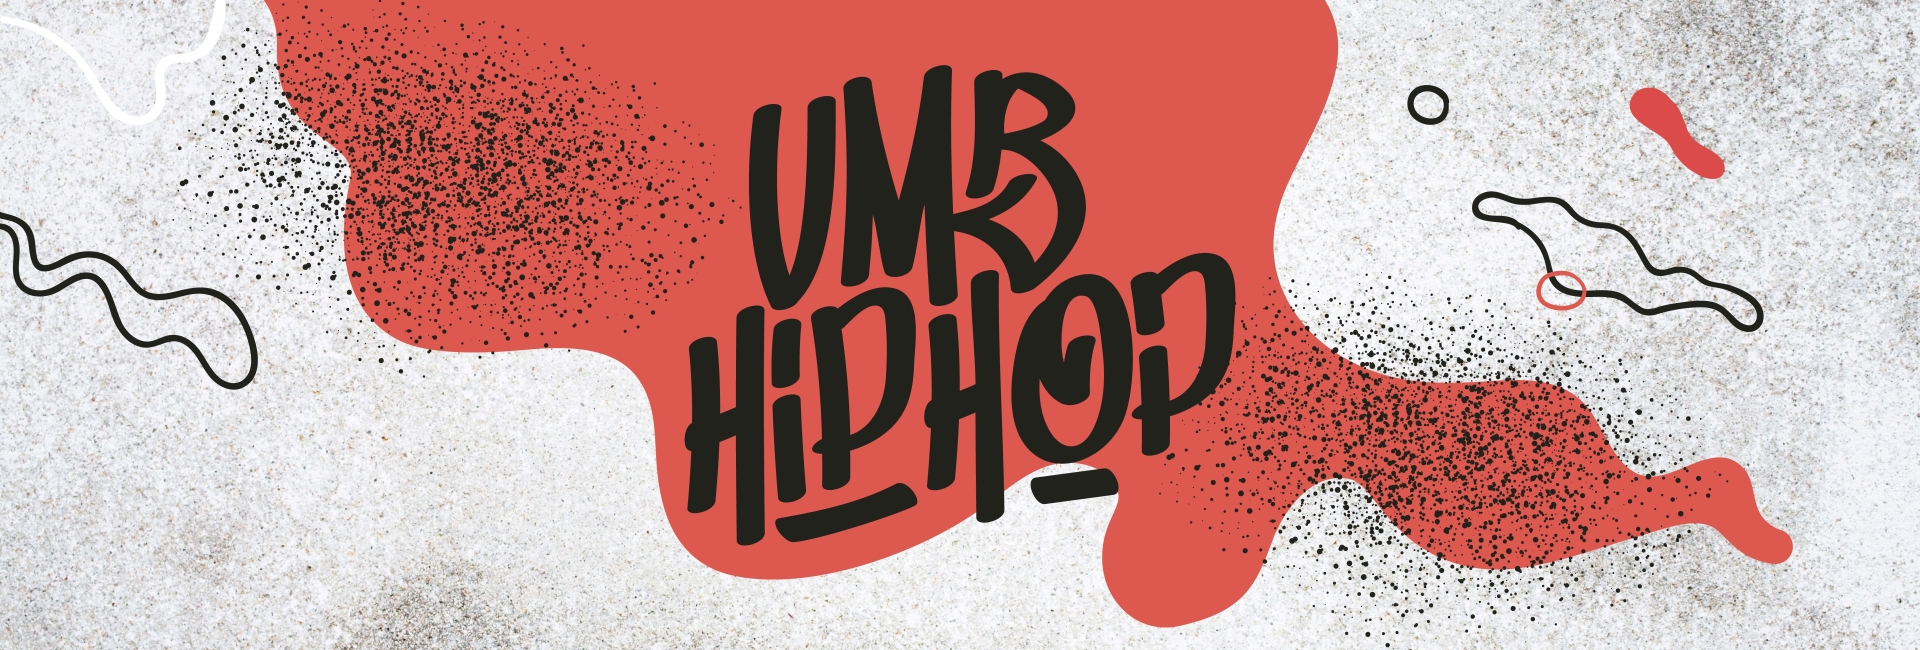 VMB Hip Hop